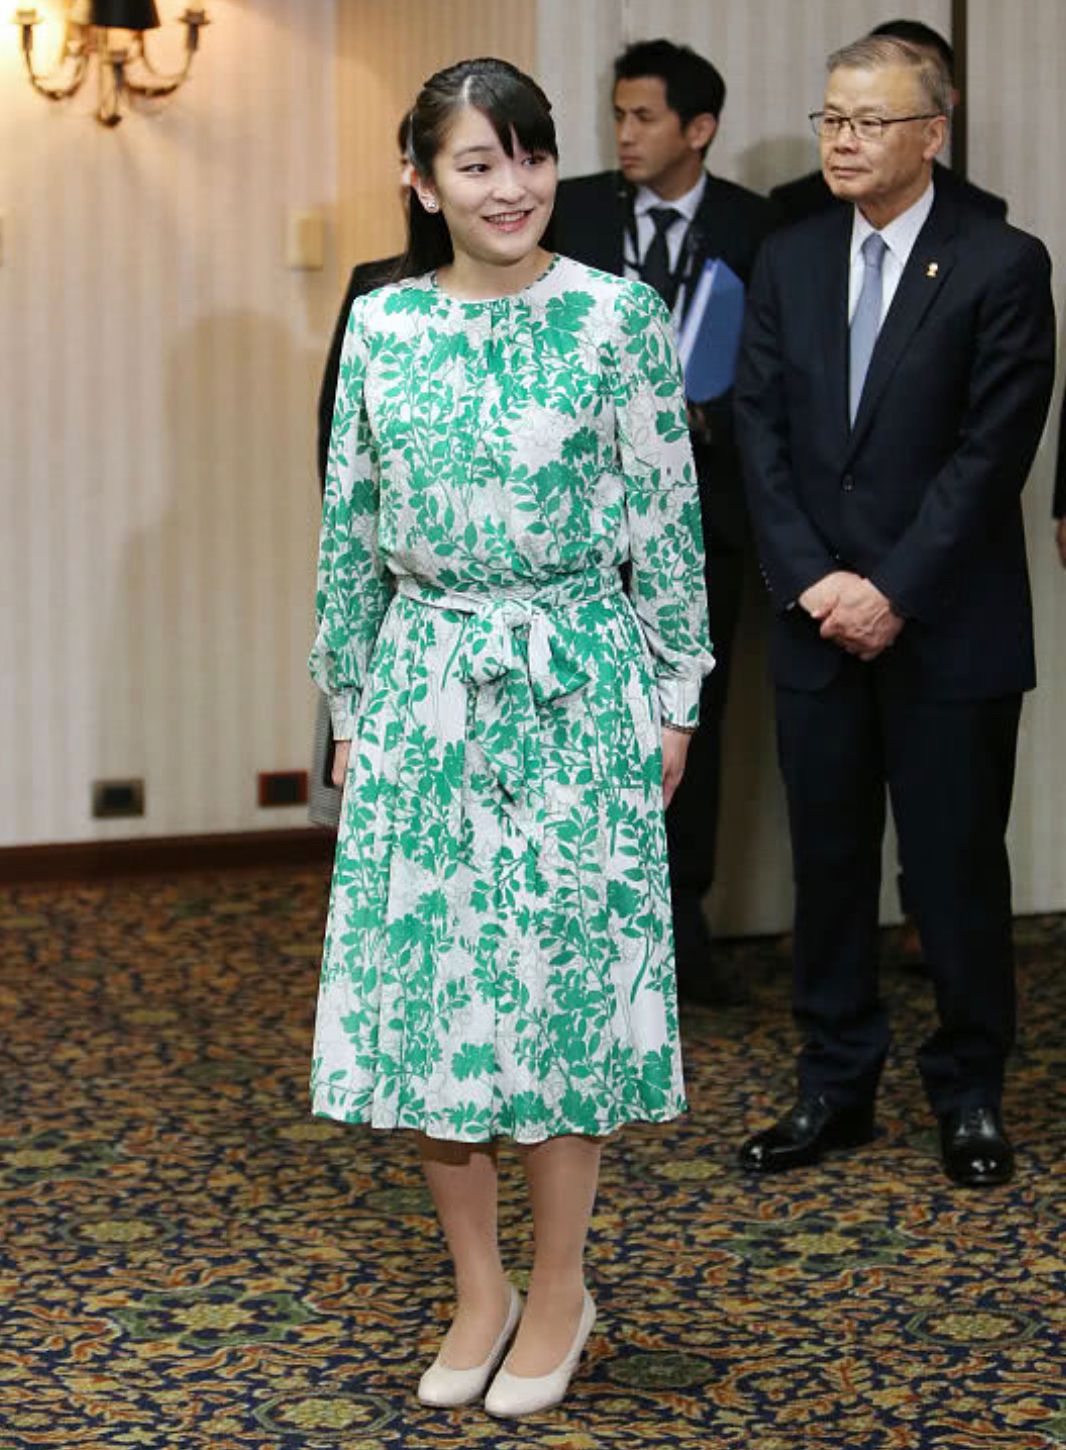 原创             日本公主出行没皇家范，穿搭低调如邻家少女，驸马爷扎小辫挺帅气